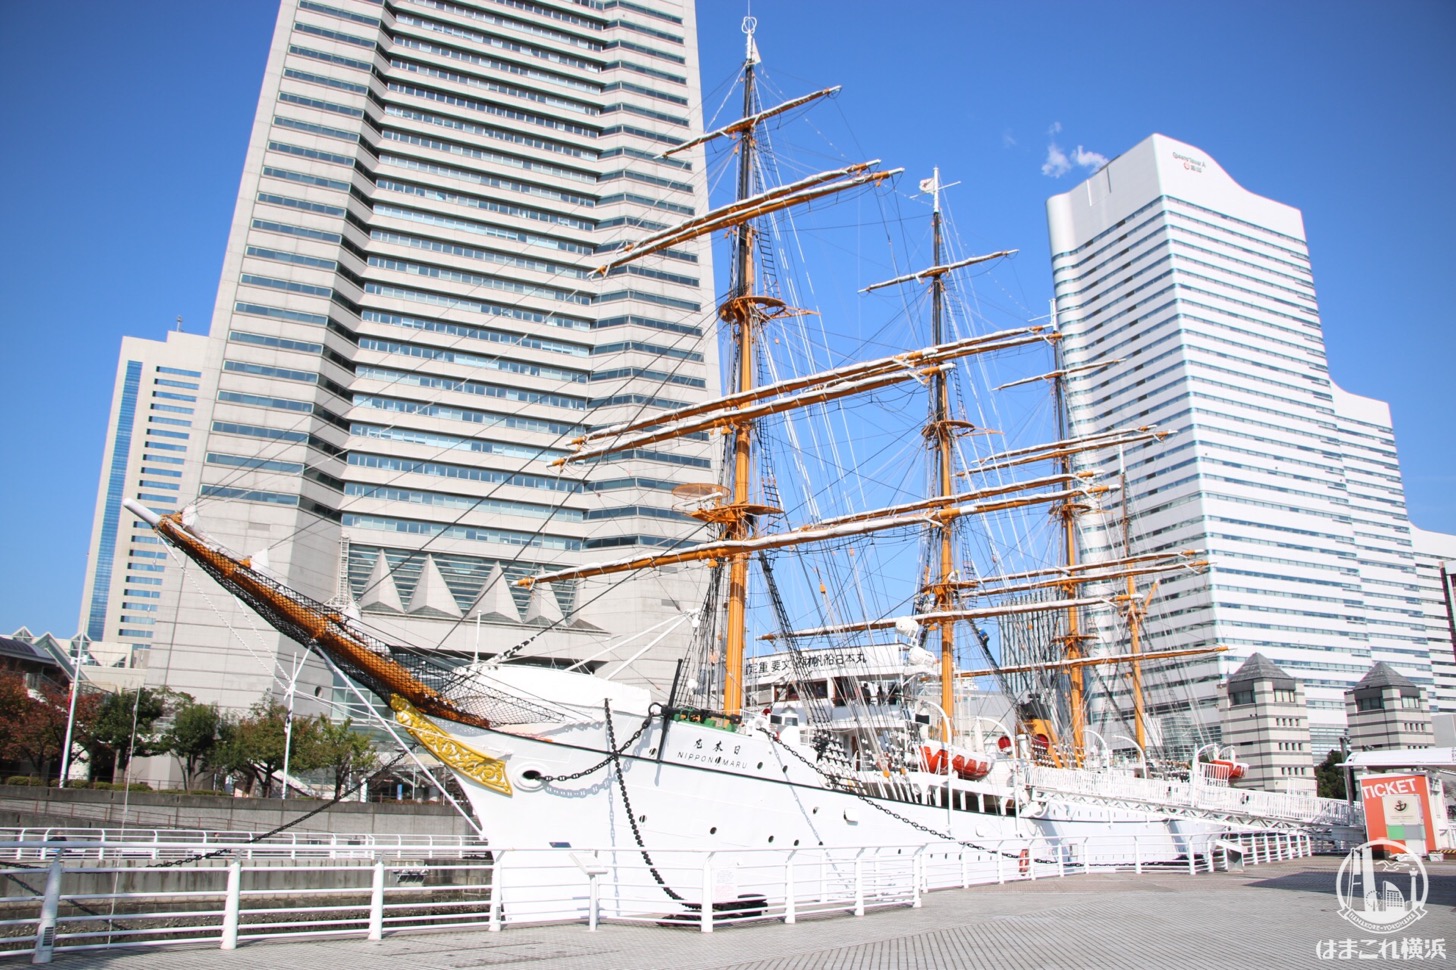 帆船日本丸 大規模修繕工事により2018年11月1日から休館